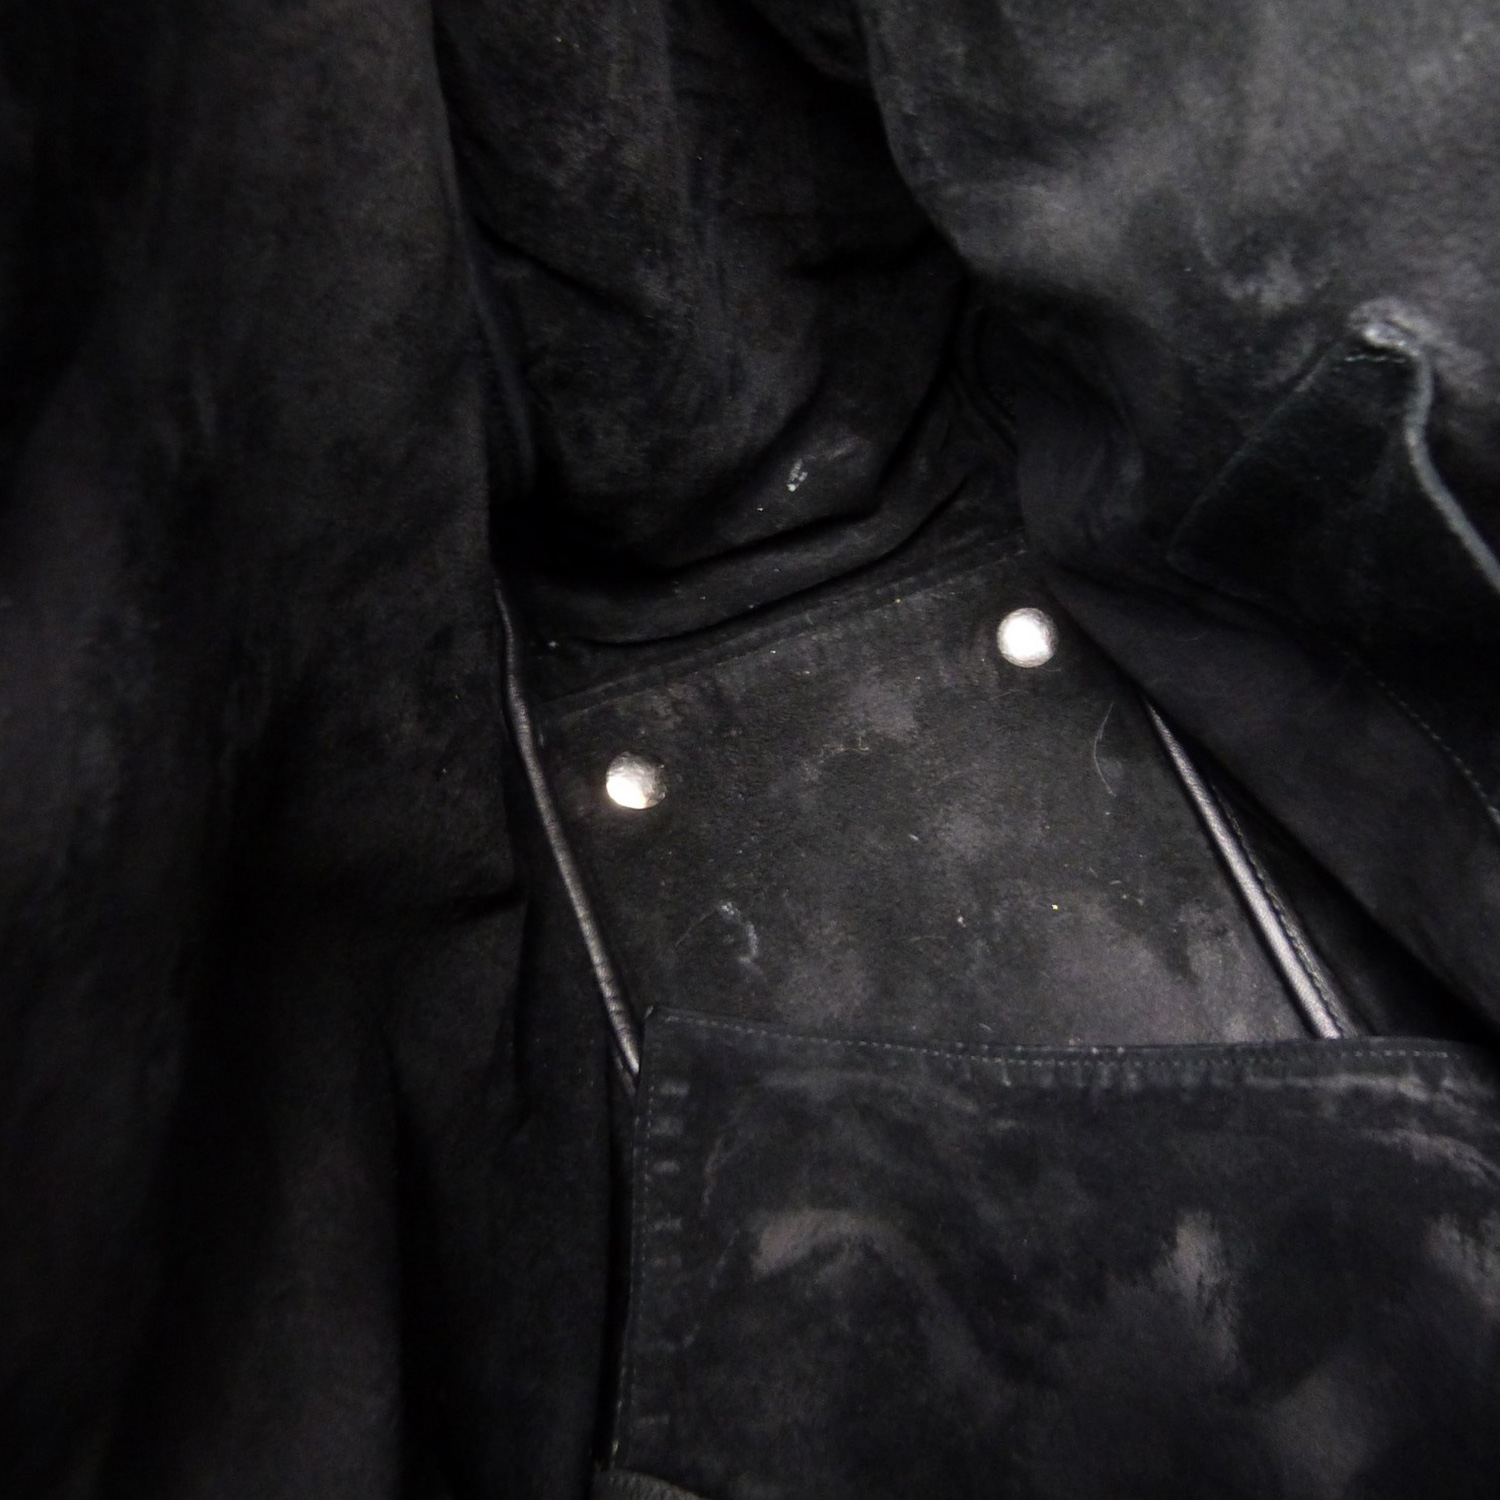 Sac à main Yves Saint Laurent Roady Authentique d'occasion en cuir poli couleur noir "Édition limitée"